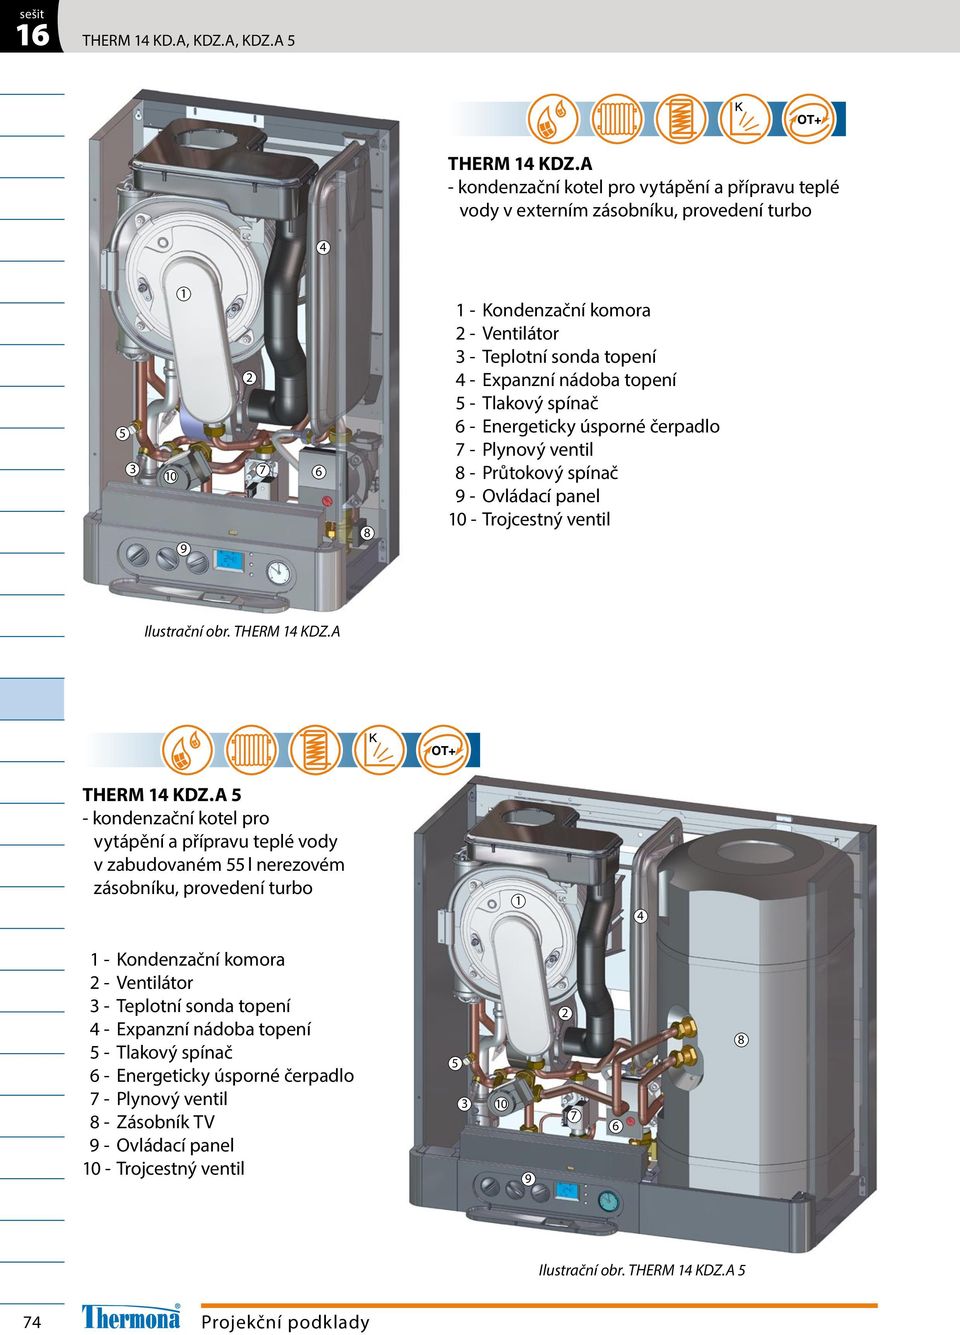 topení 5 - Tlakový spínač 6 - Energeticky úsporné čerpadlo 7 - Plynový ventil 9 - Ovládací panel 0 - Trojcestný ventil Ilustrační obr. THERM 4 KDZ.A THERM 4 KDZ.